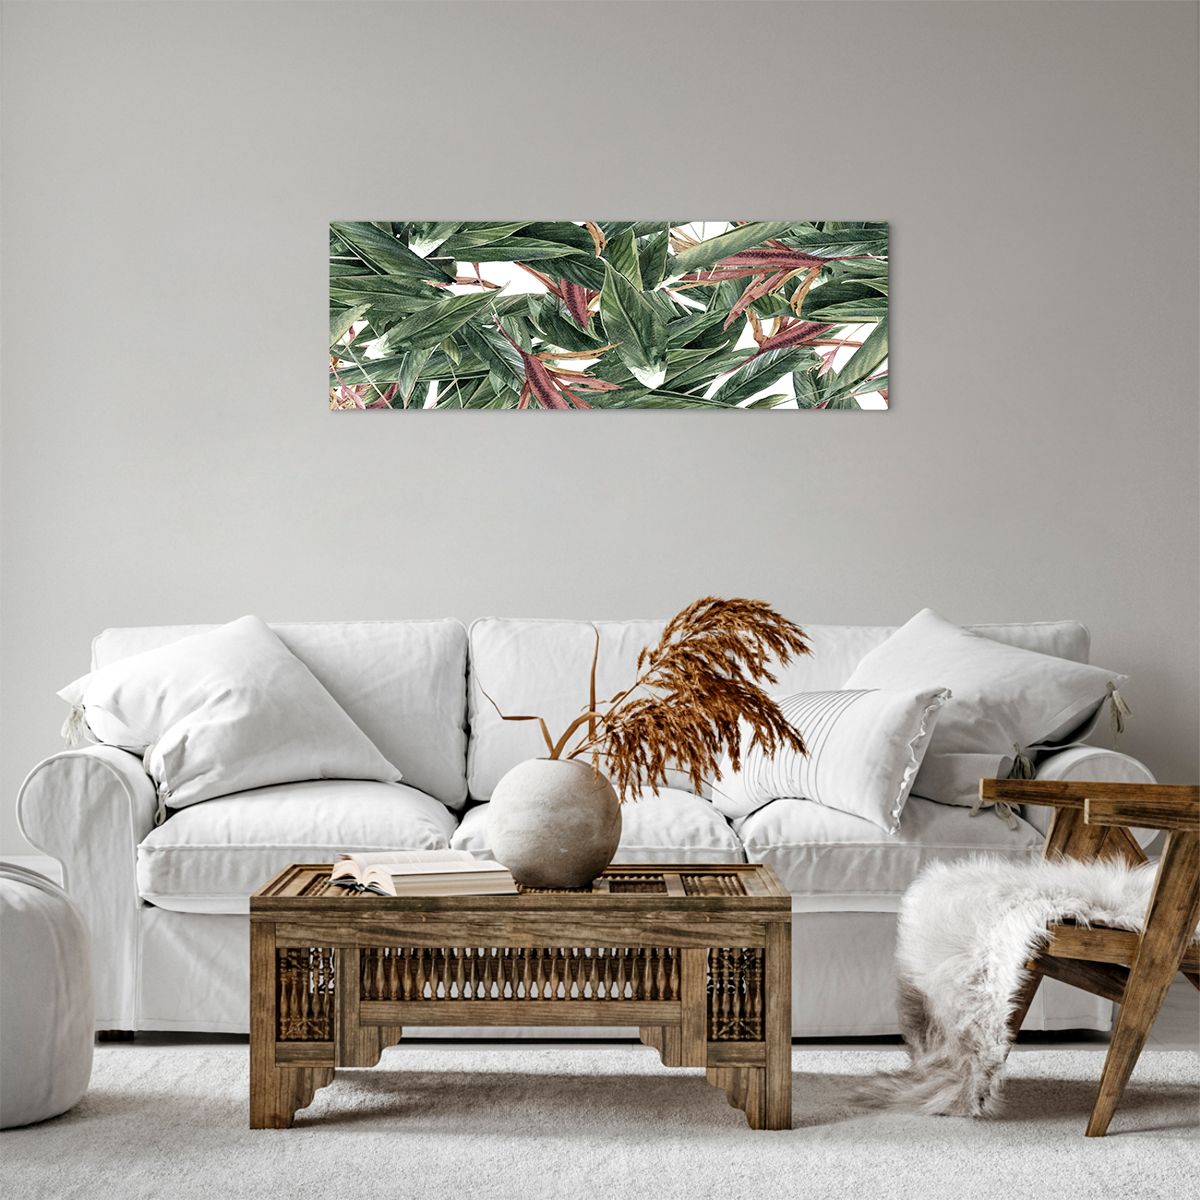 Bild auf Leinwand  Blumen, Bild auf Leinwand Hawaii, Bild auf Leinwand Laub, Bild auf Leinwand Natur, Bild auf Leinwand Moderne Kunst